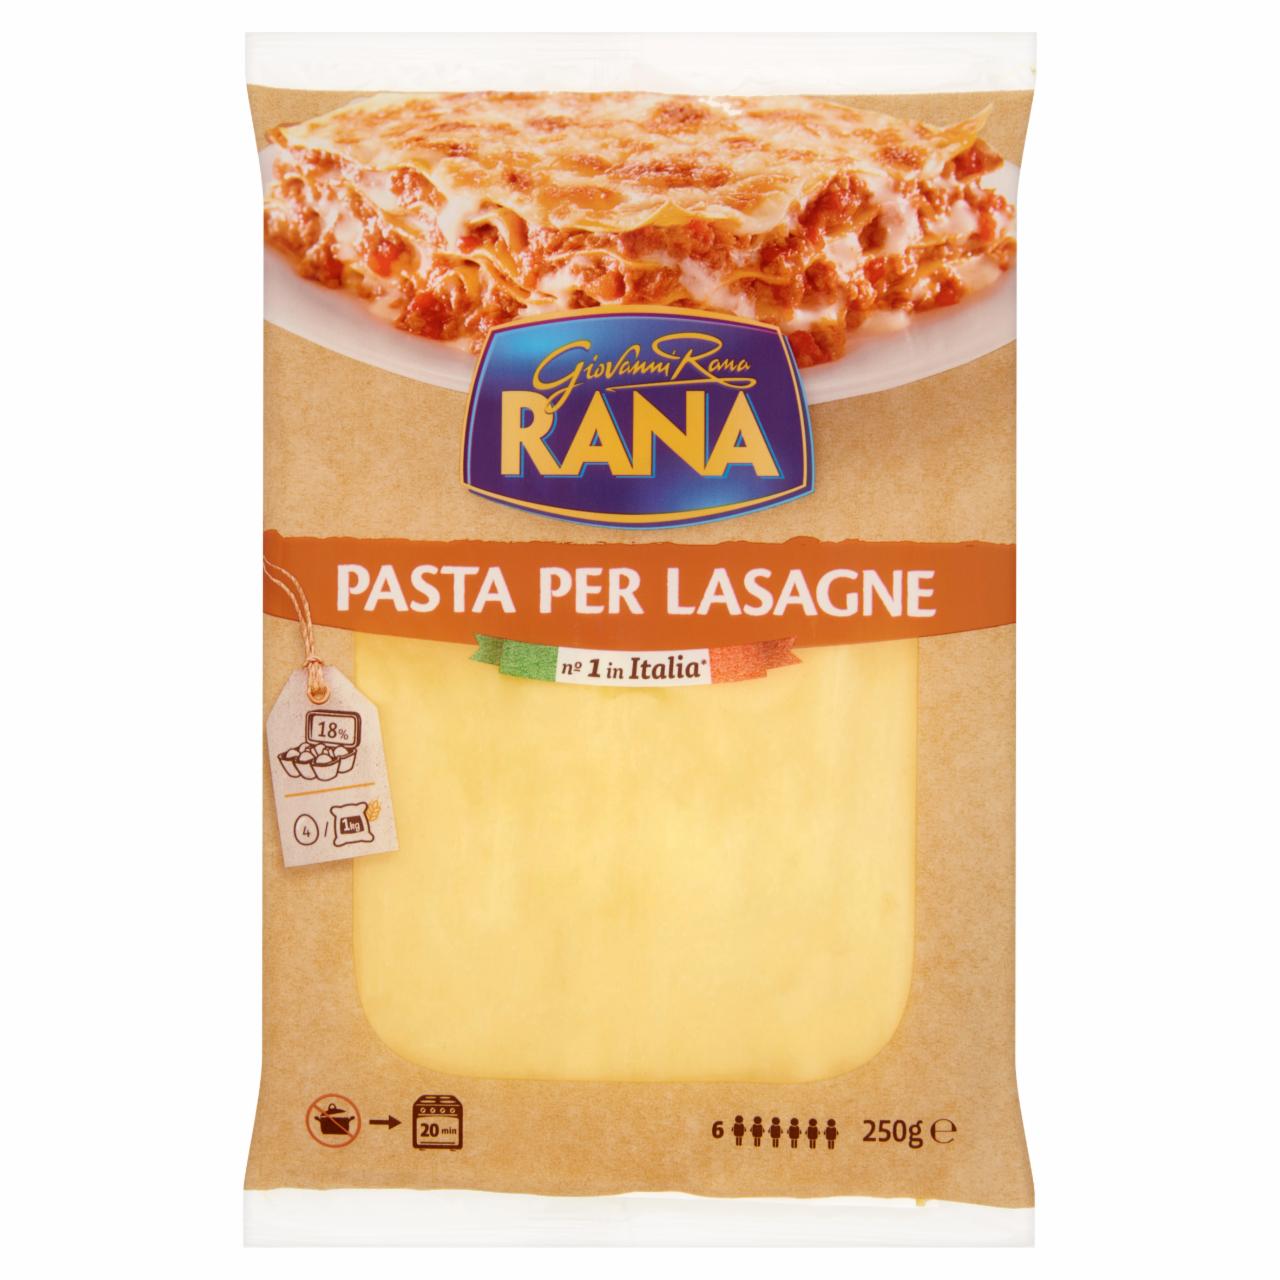 Képek - Giovanni Rana Pasta Per Lasagne friss tojással készült tészta 250 g